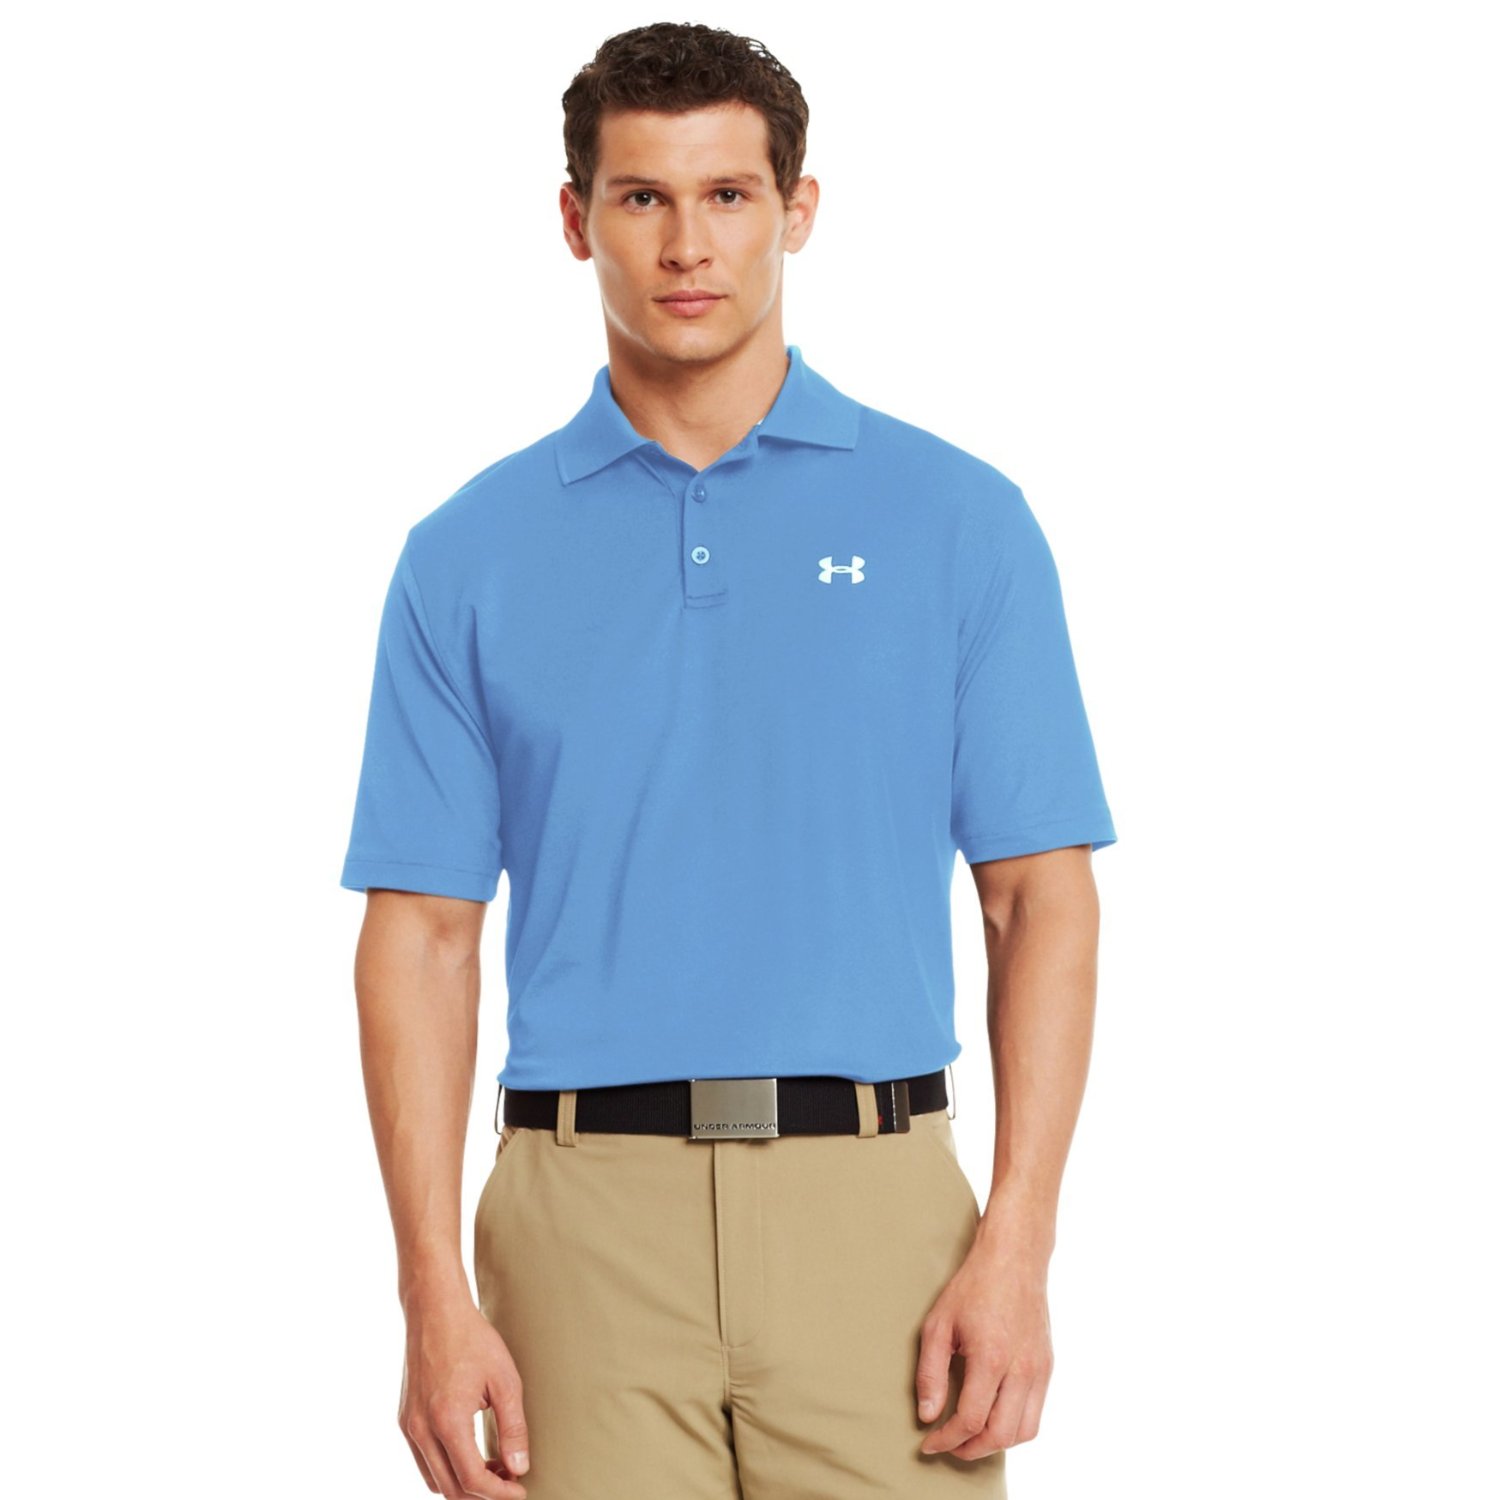 Under Armour UA Performance Short Sleeve Team Golf Polo Shirts